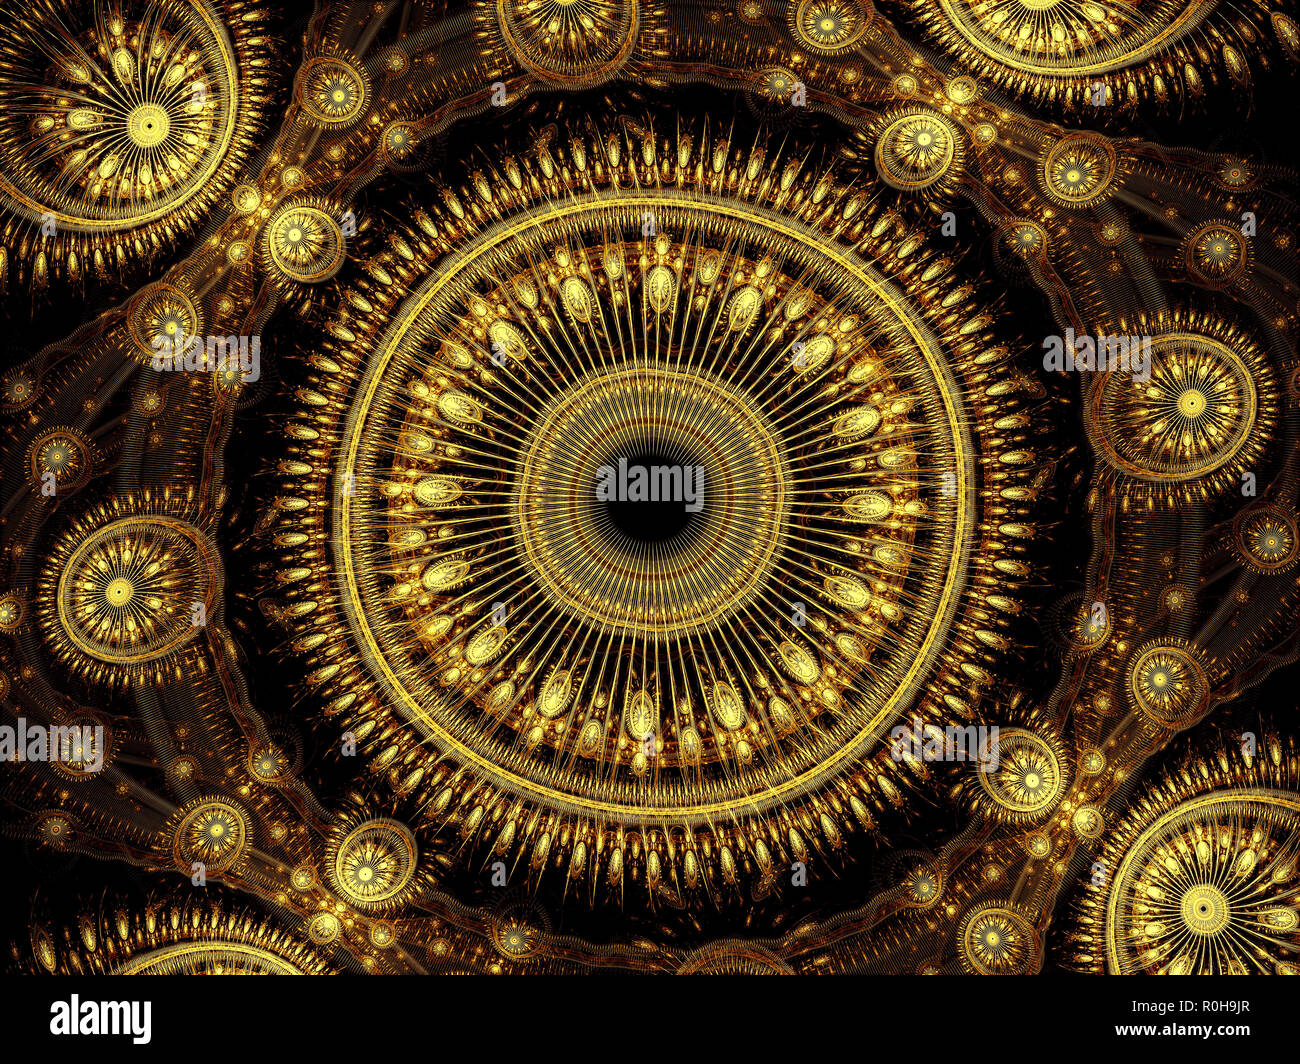 Mandala fractale orné - abstract image générée numériquement Banque D'Images